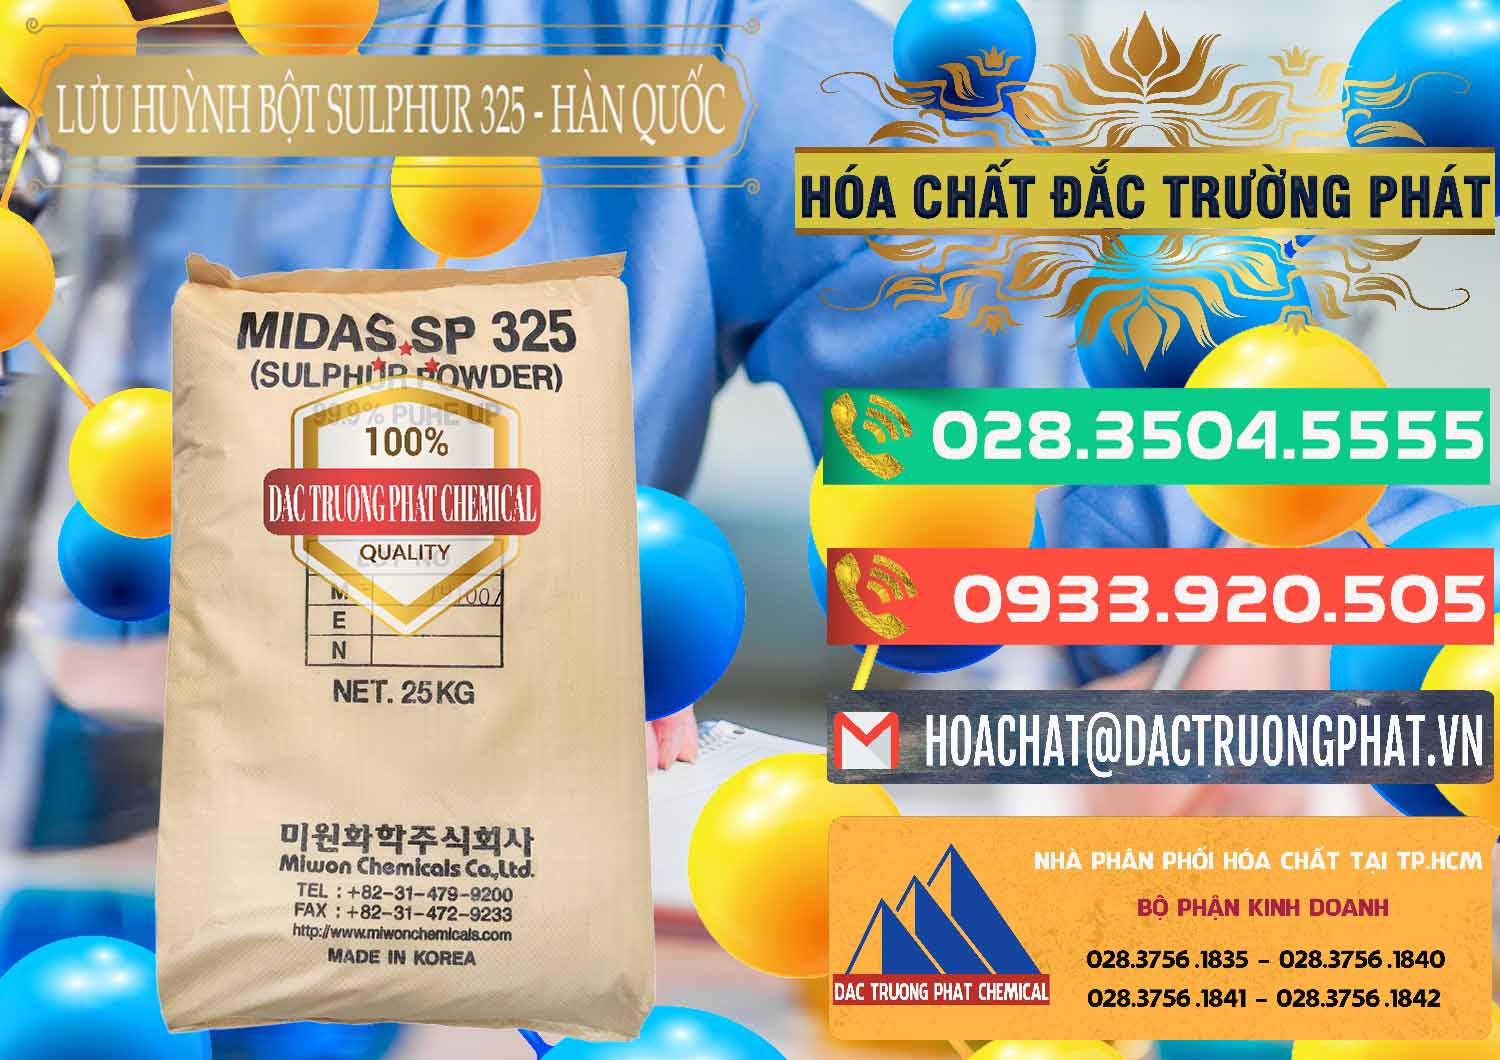 Đơn vị chuyên bán và cung cấp Lưu huỳnh Bột - Sulfur Powder Midas SP 325 Hàn Quốc Korea - 0198 - Cung cấp ( phân phối ) hóa chất tại TP.HCM - congtyhoachat.com.vn